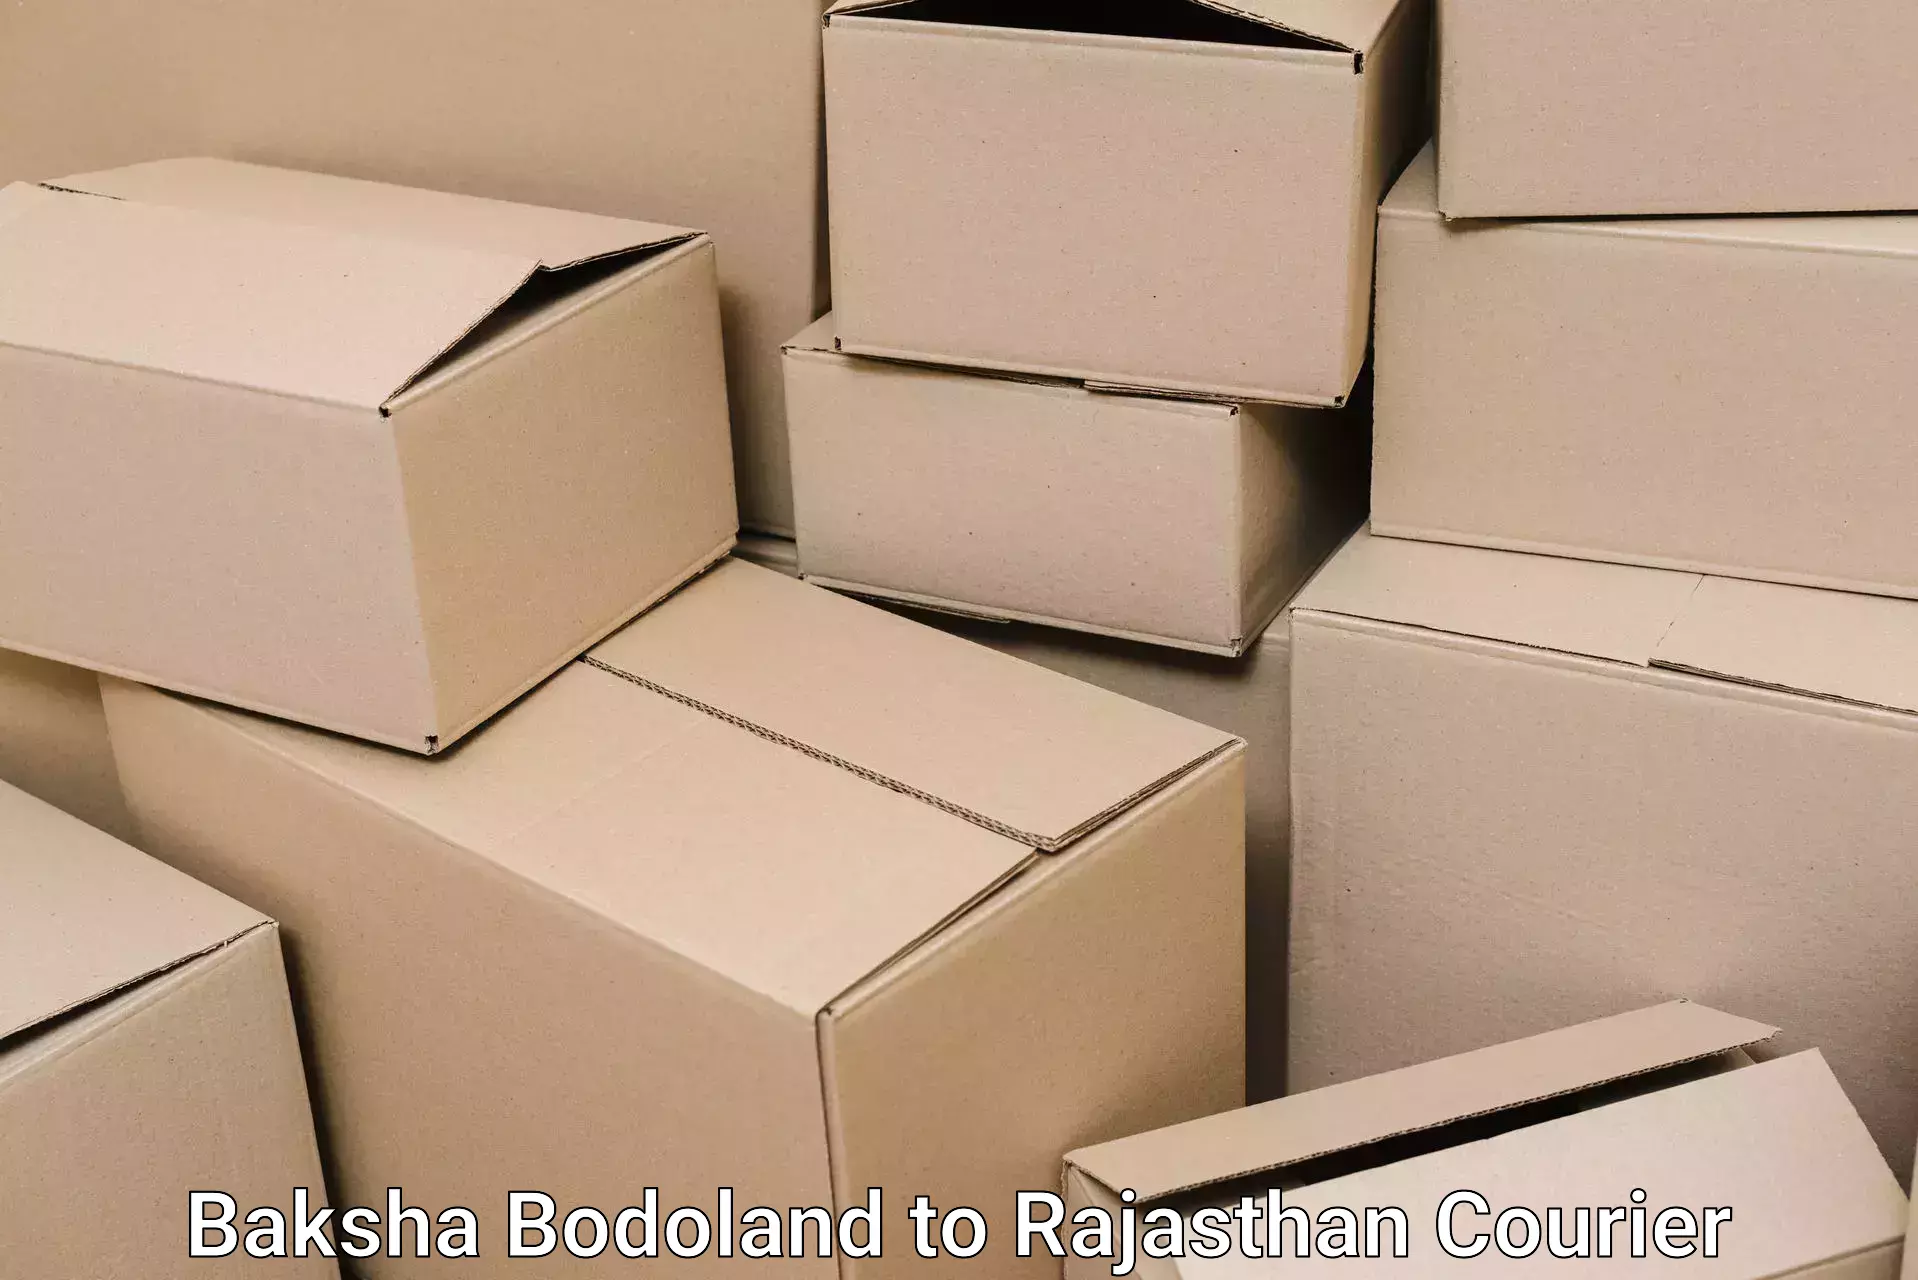 Quality moving and storage Baksha Bodoland to IIT Jodhpur